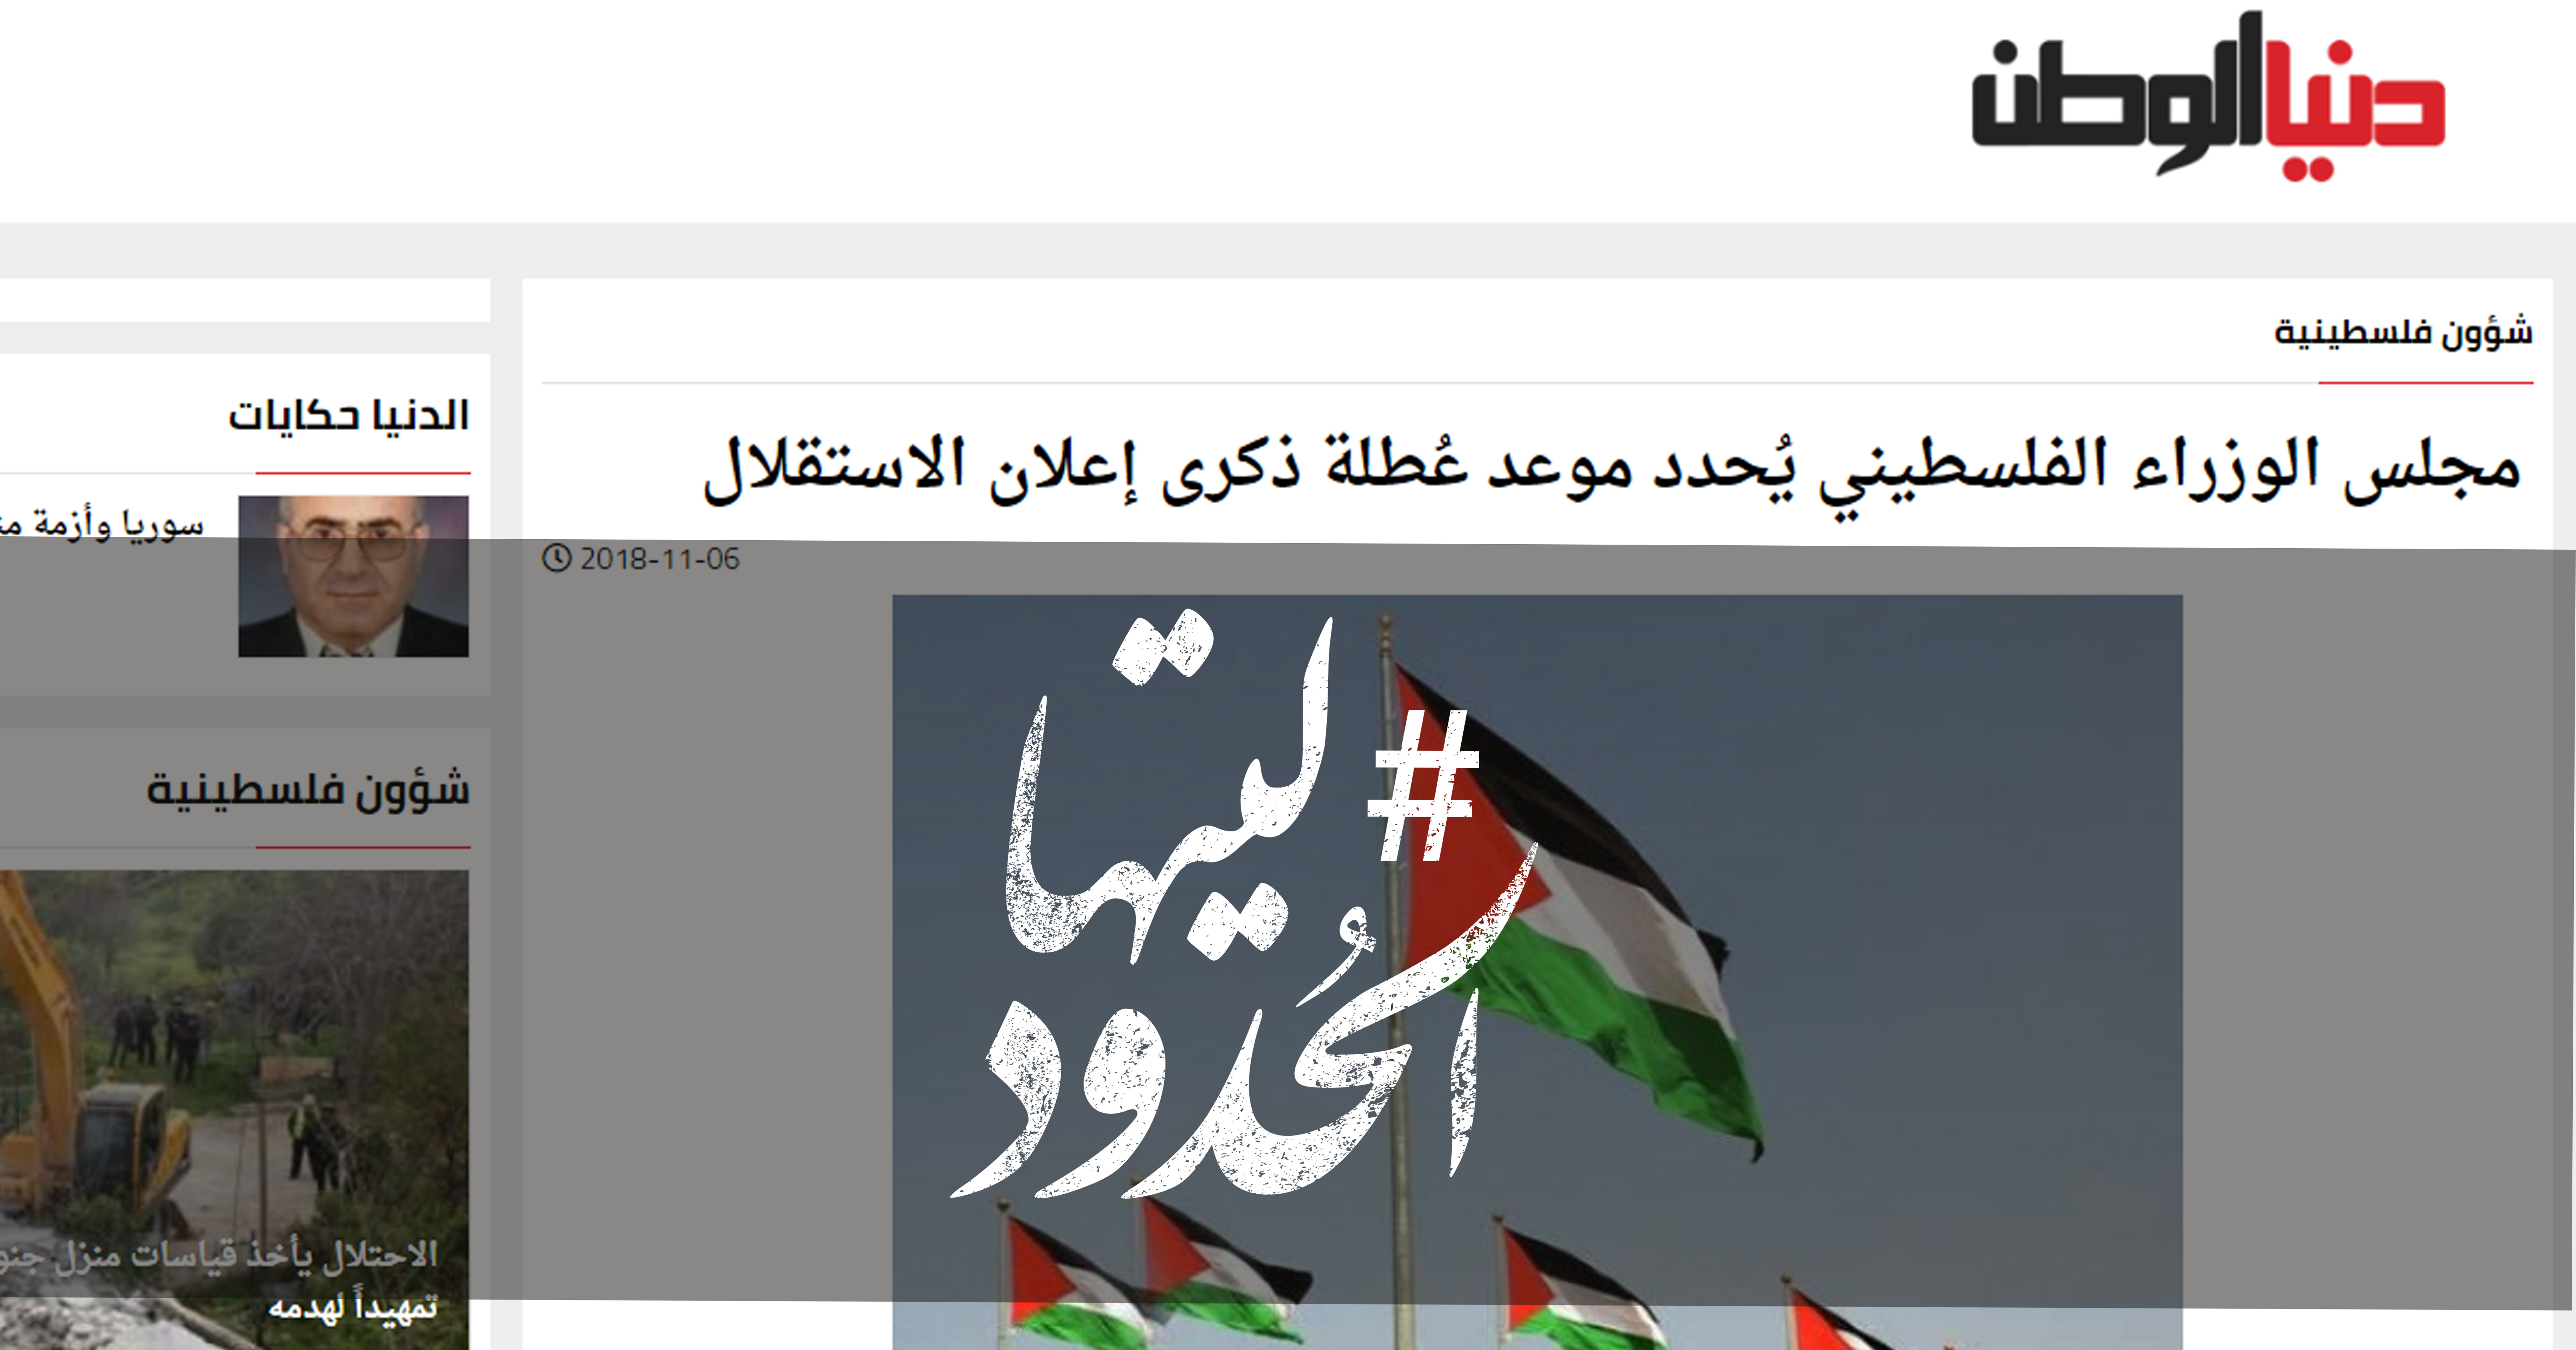 صورة مجلس الوزراء الفلسطيني يحدد موعد عطلة ذكرى إعلان الاستقلال